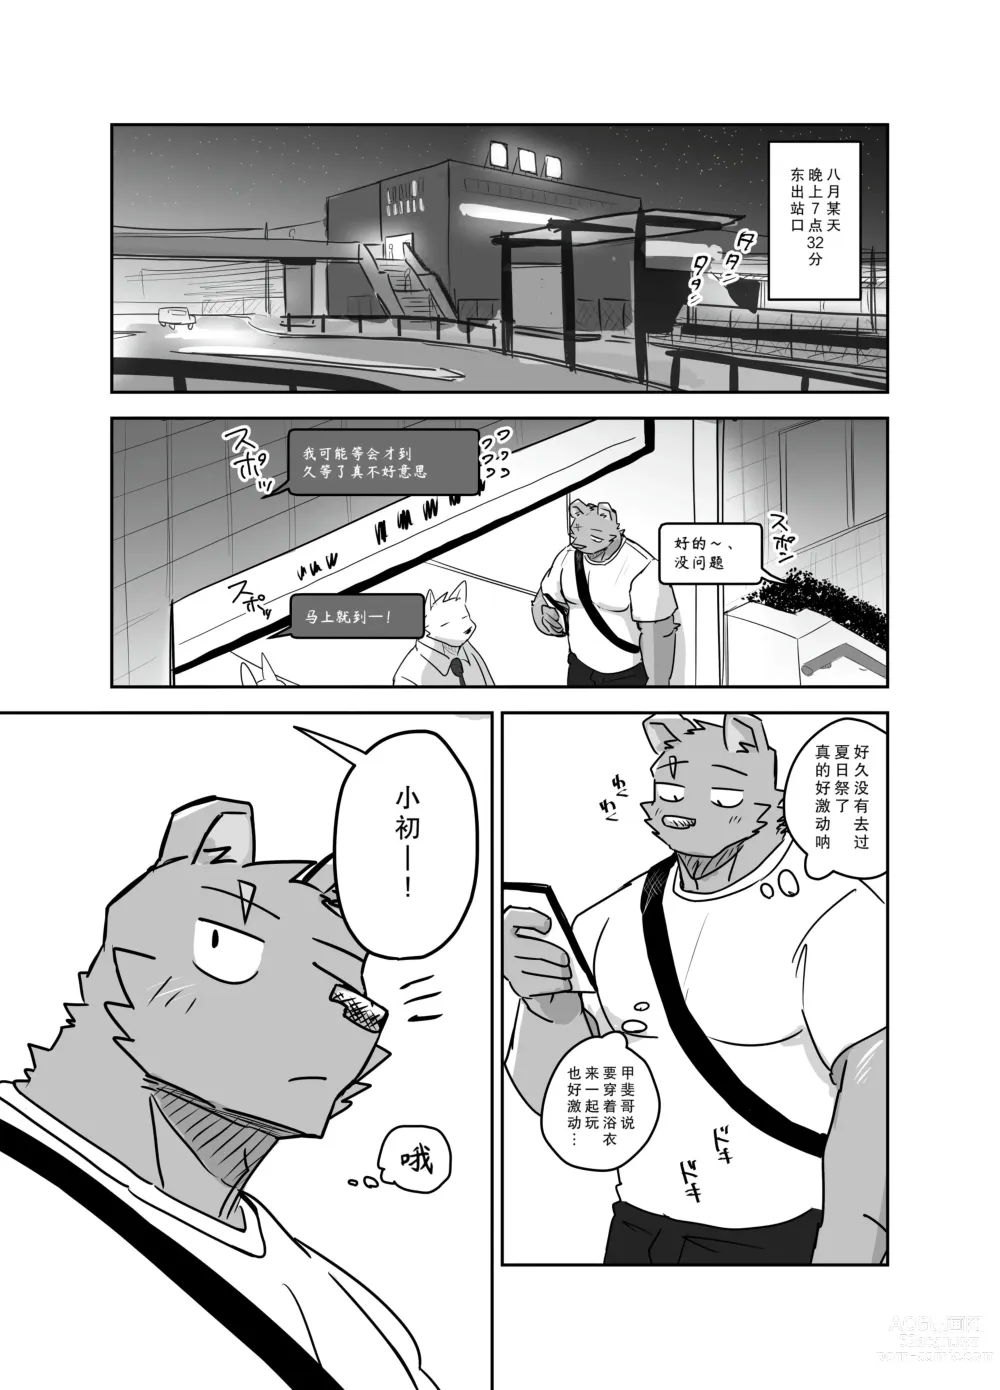 Page 2 of manga 去夏日祭的故事